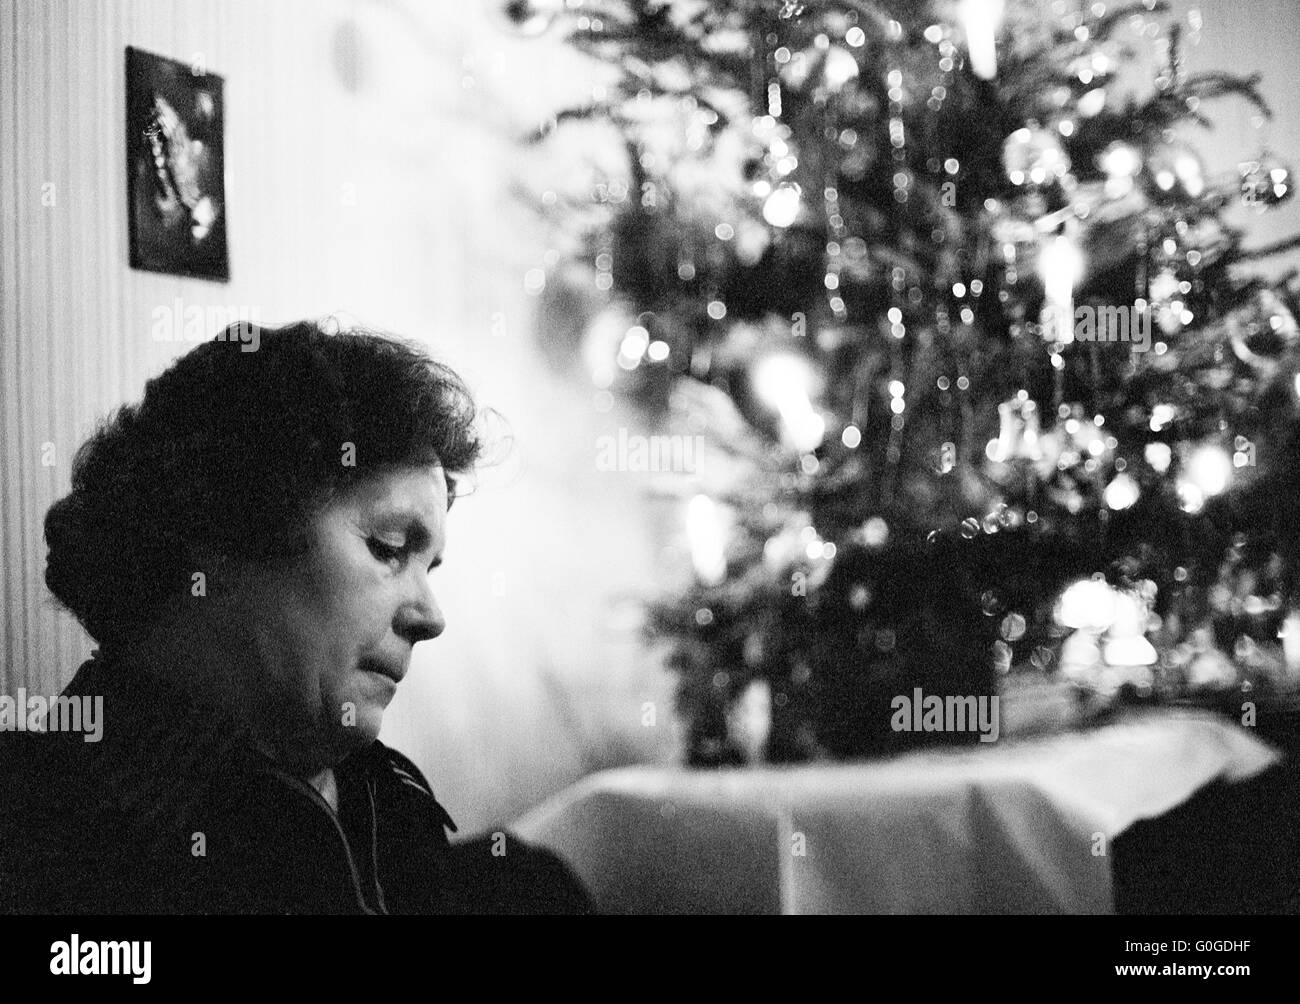 Negli anni settanta, foto in bianco e nero, persone, donna 50 65 anni lonely seduto in soggiorno, dietro la decorazione di Natale, solitudine, purtroppo, depresso, pensieroso Foto Stock